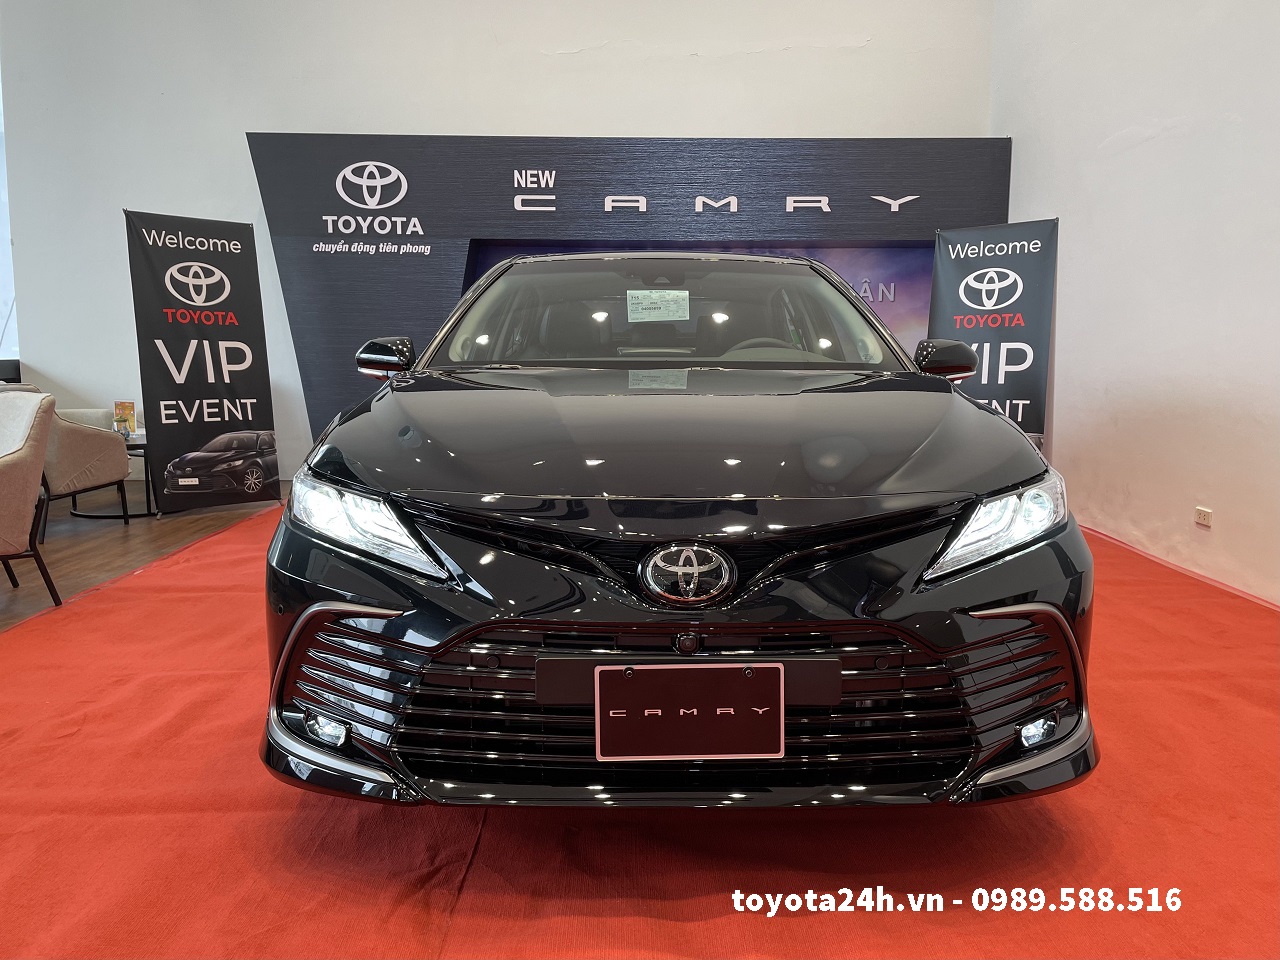 Đánh giá xe Toyota Camry 2016  Thông số kỹ thuật và giá bán